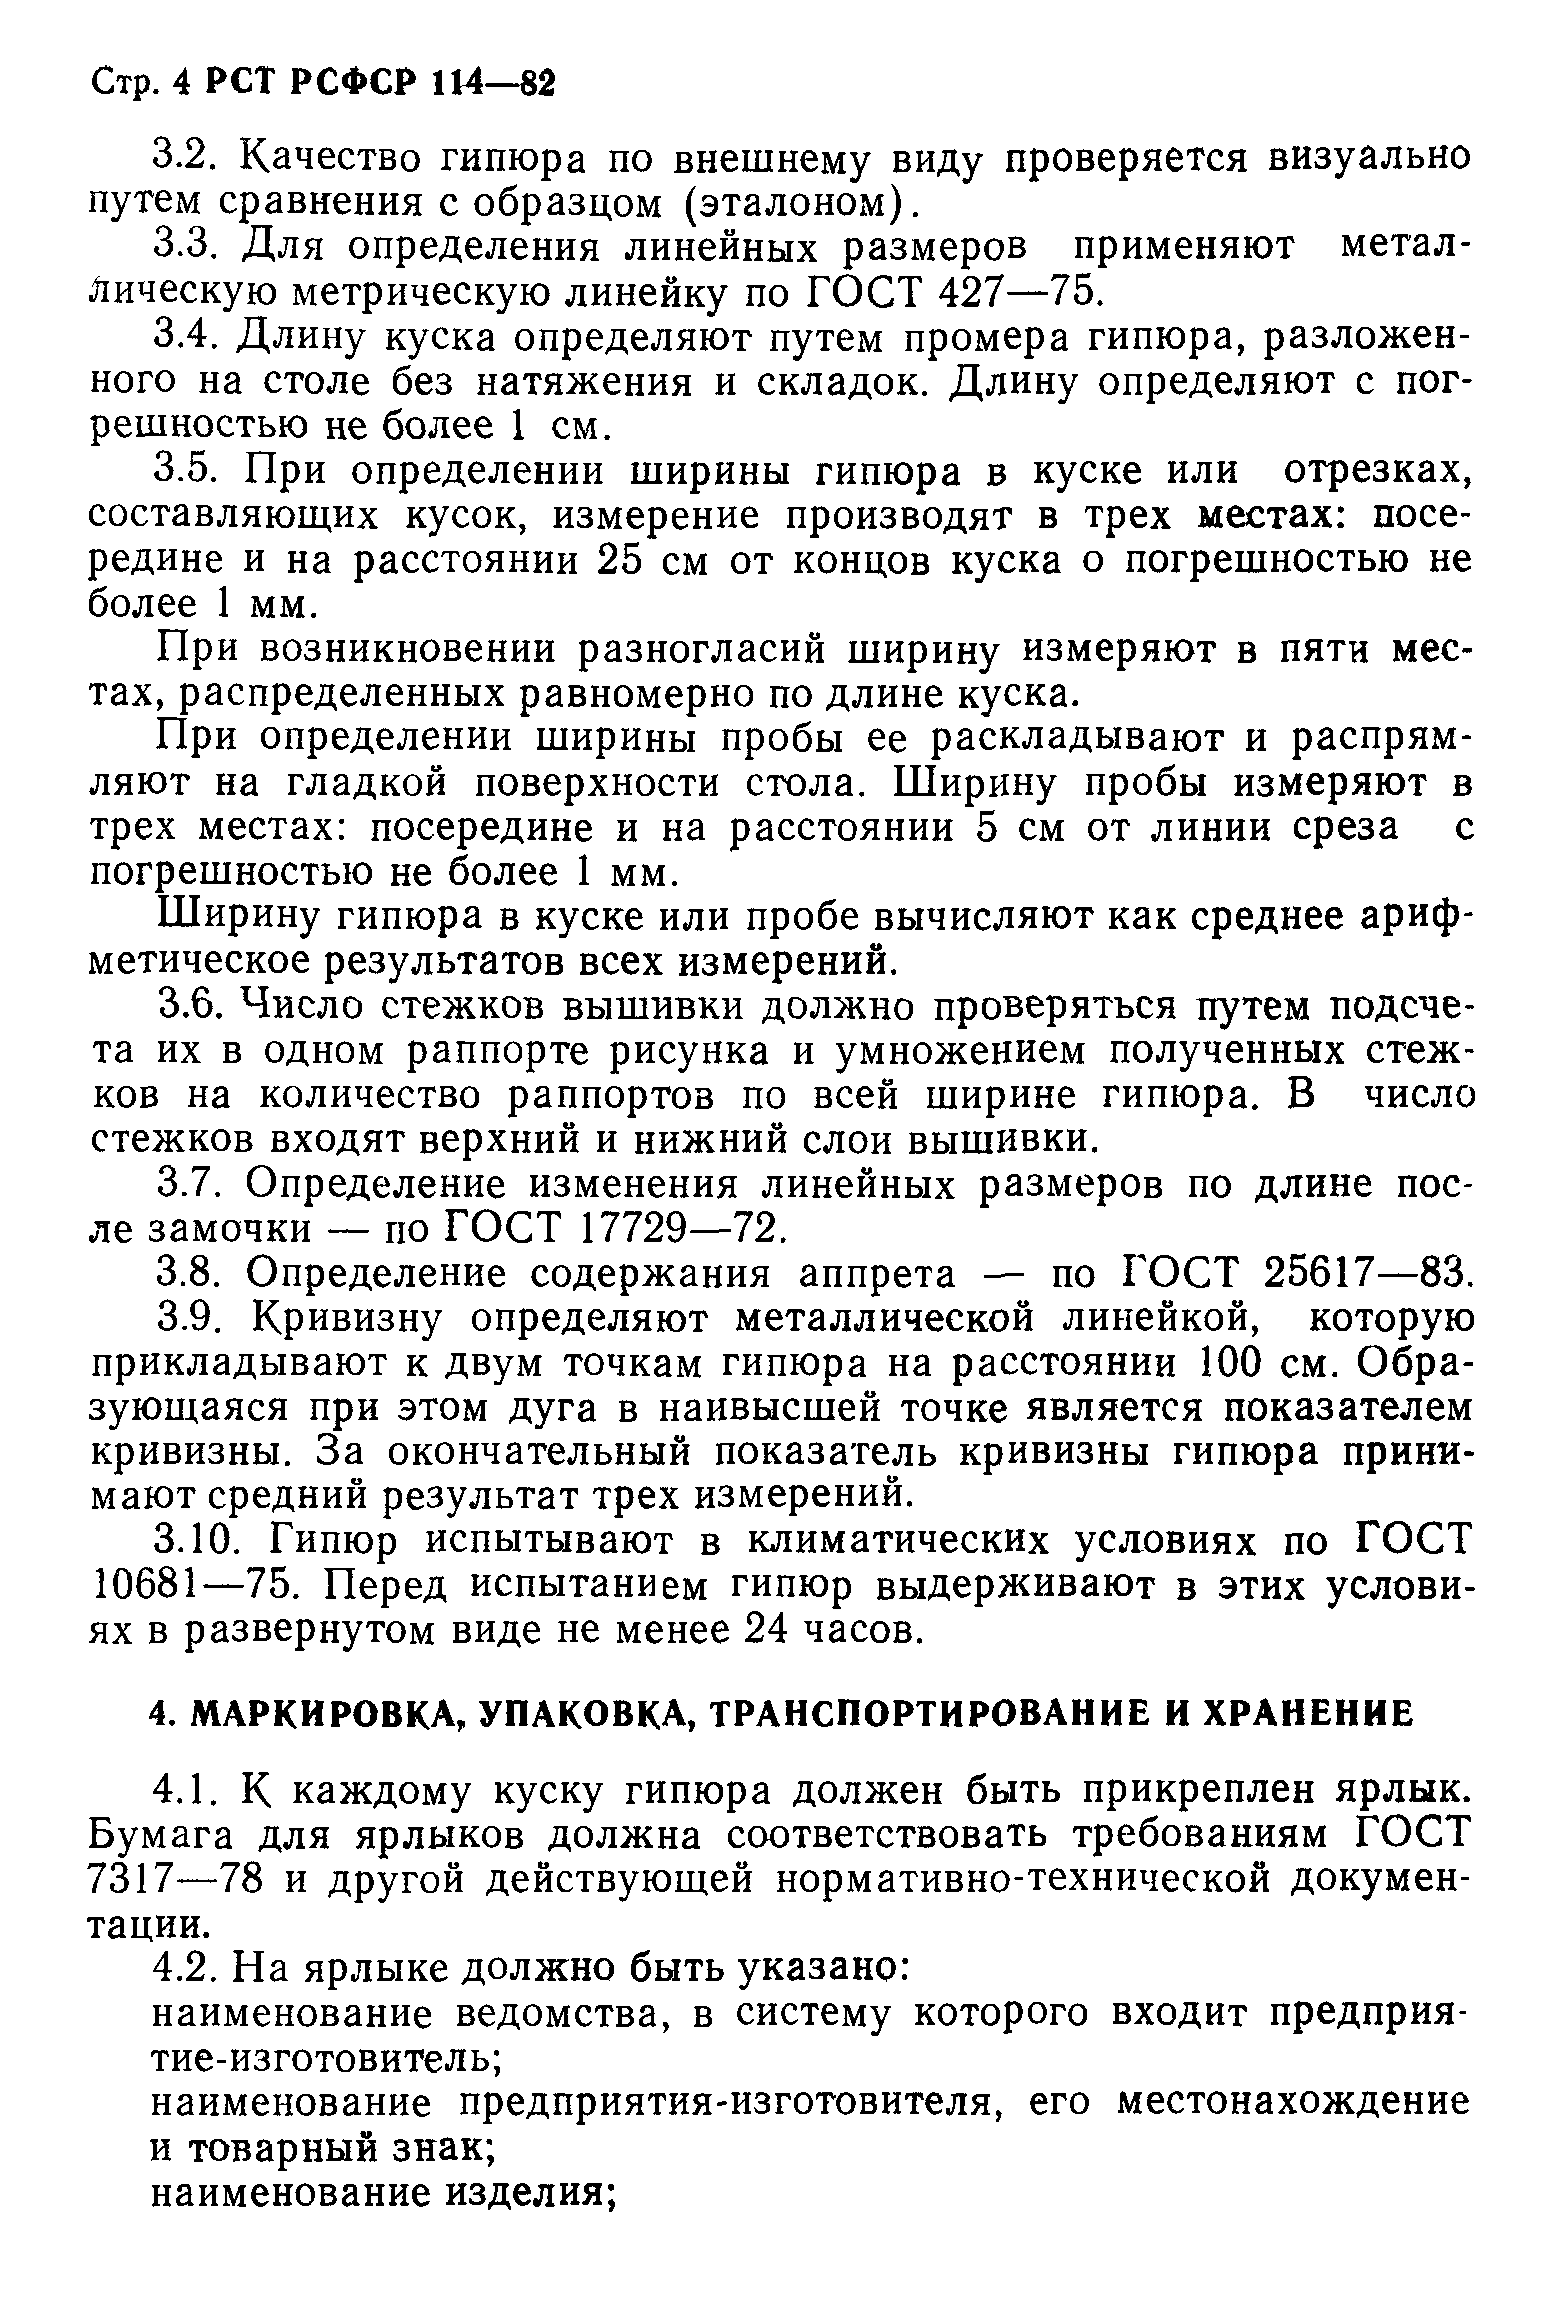 РСТ РСФСР 114-82